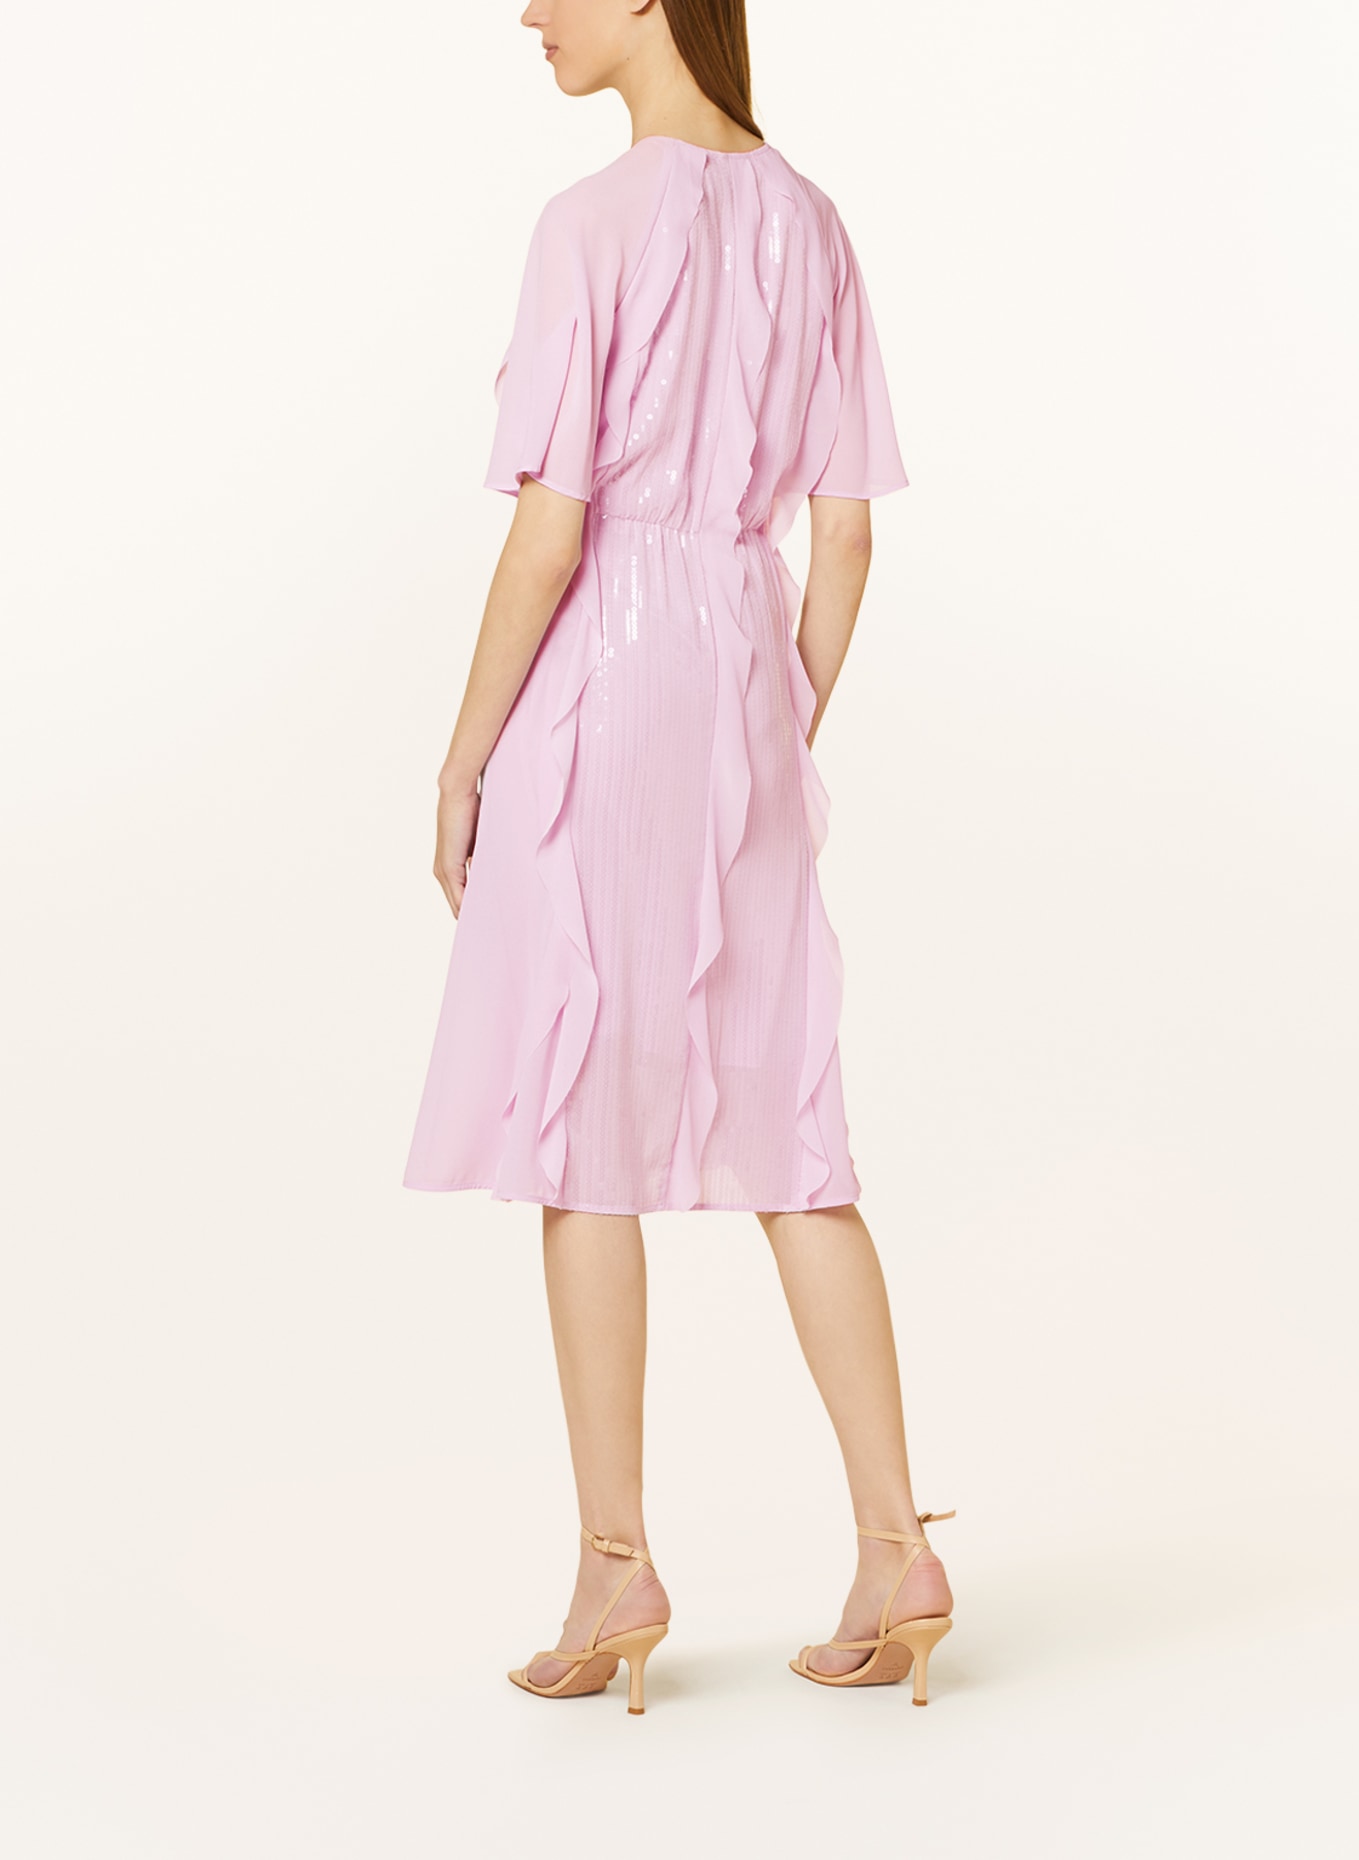 MARC CAIN Kleid mit Pailletten und Volants, Farbe: 709 pink lavender (Bild 3)